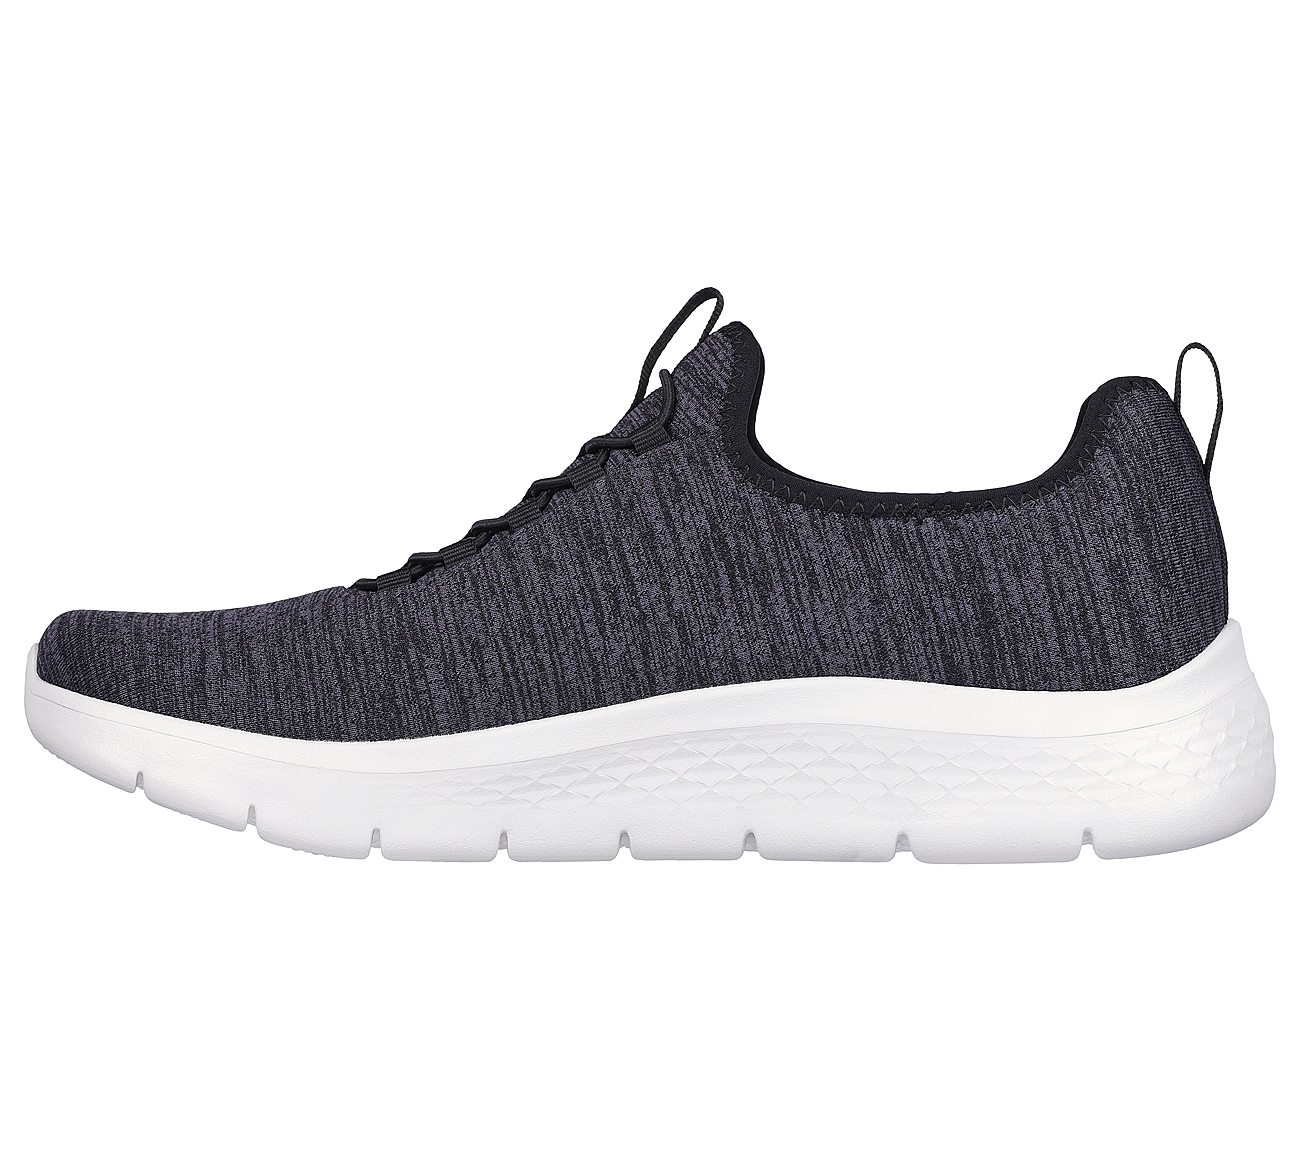 Skechers Black/White Go-Walk-Flex Men's Walking Shoes - Style ID ...